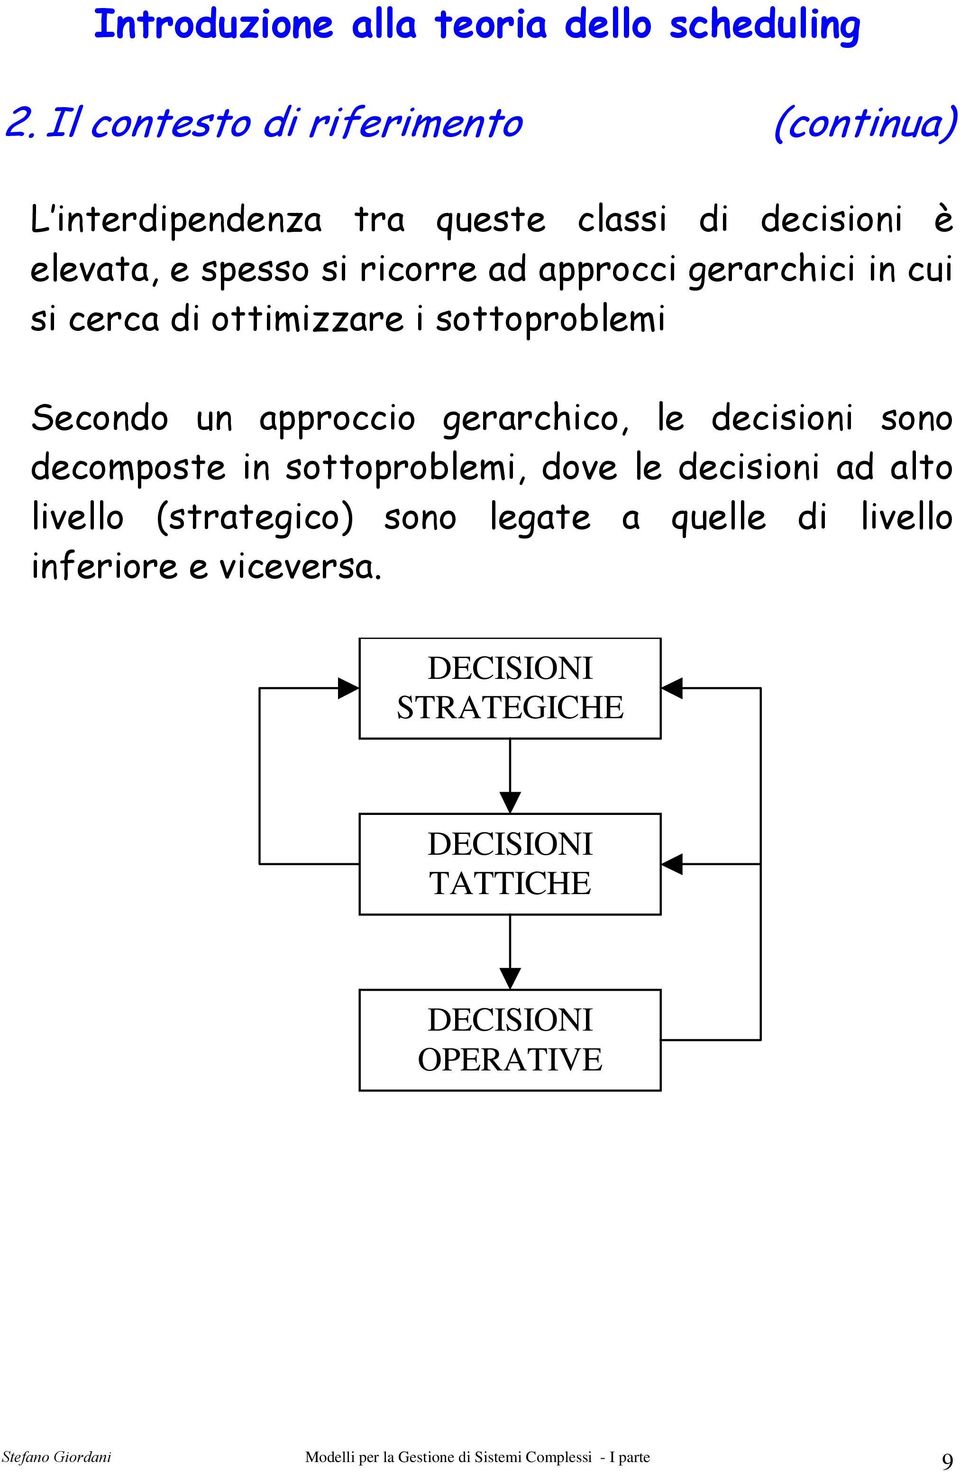 gerarchico, le decisioni sono decomposte in sottoproblemi, dove le decisioni ad alto livello (strategico)